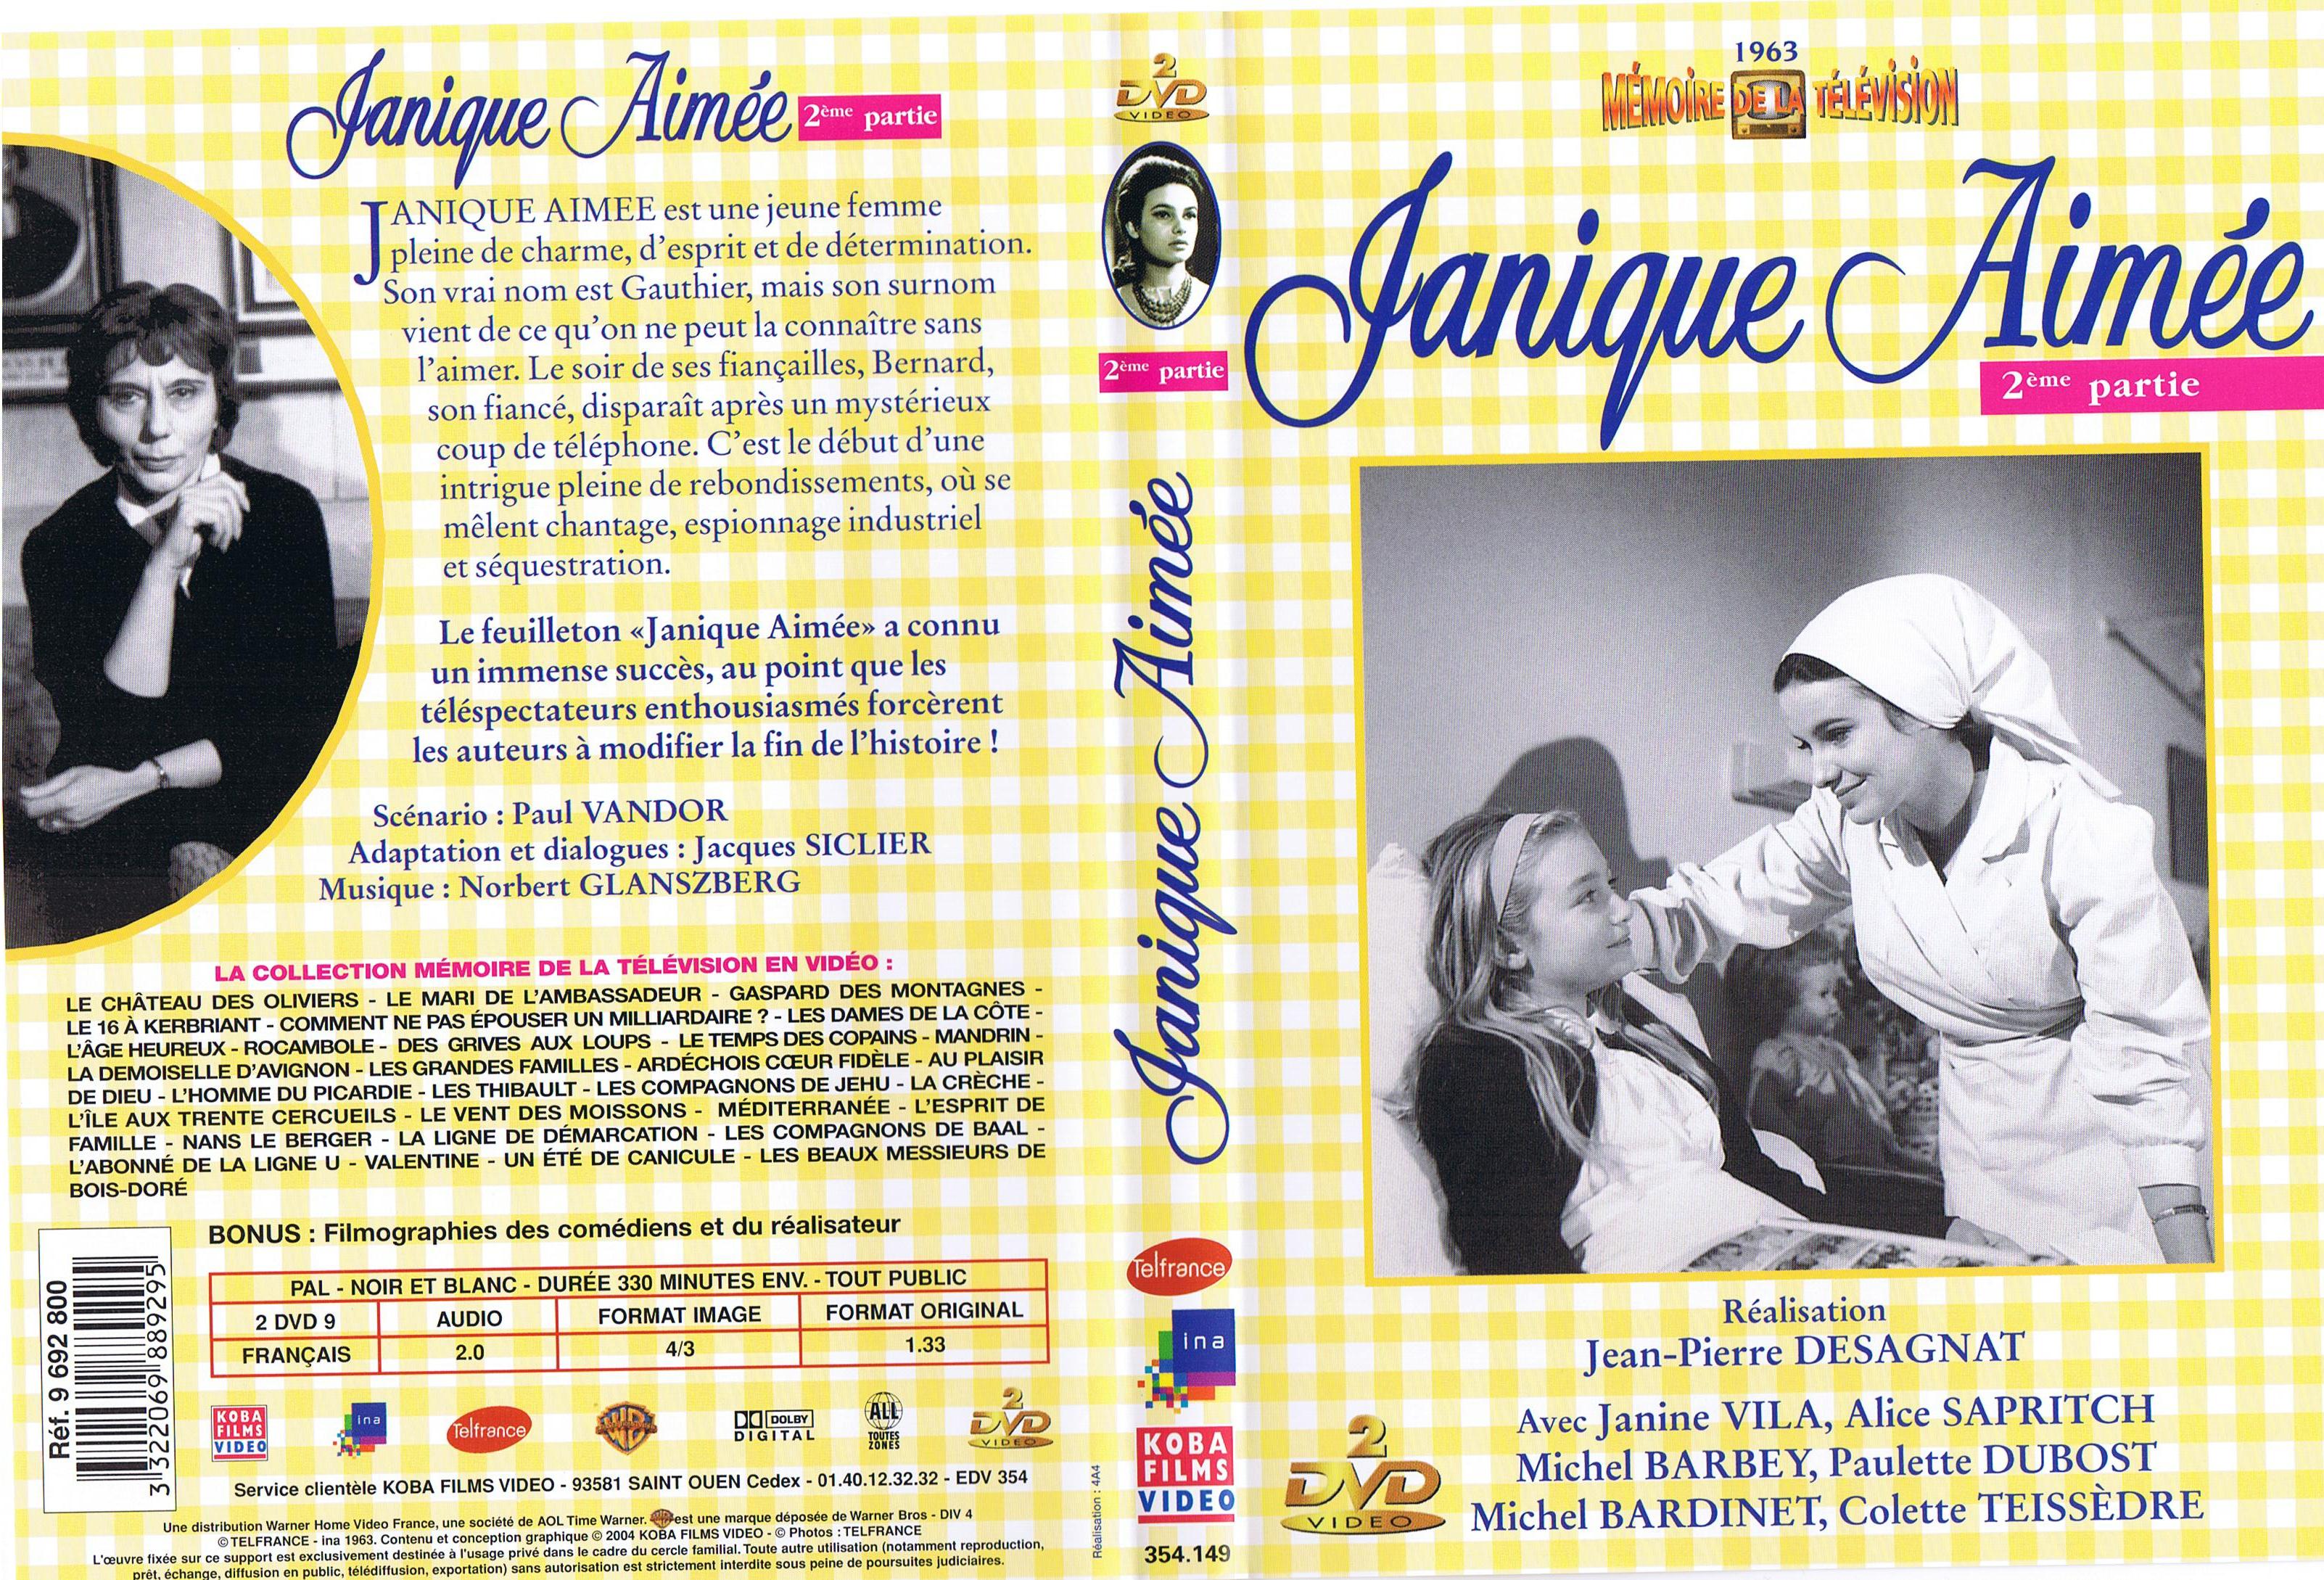 Jaquette DVD Janique Aime 2me partie